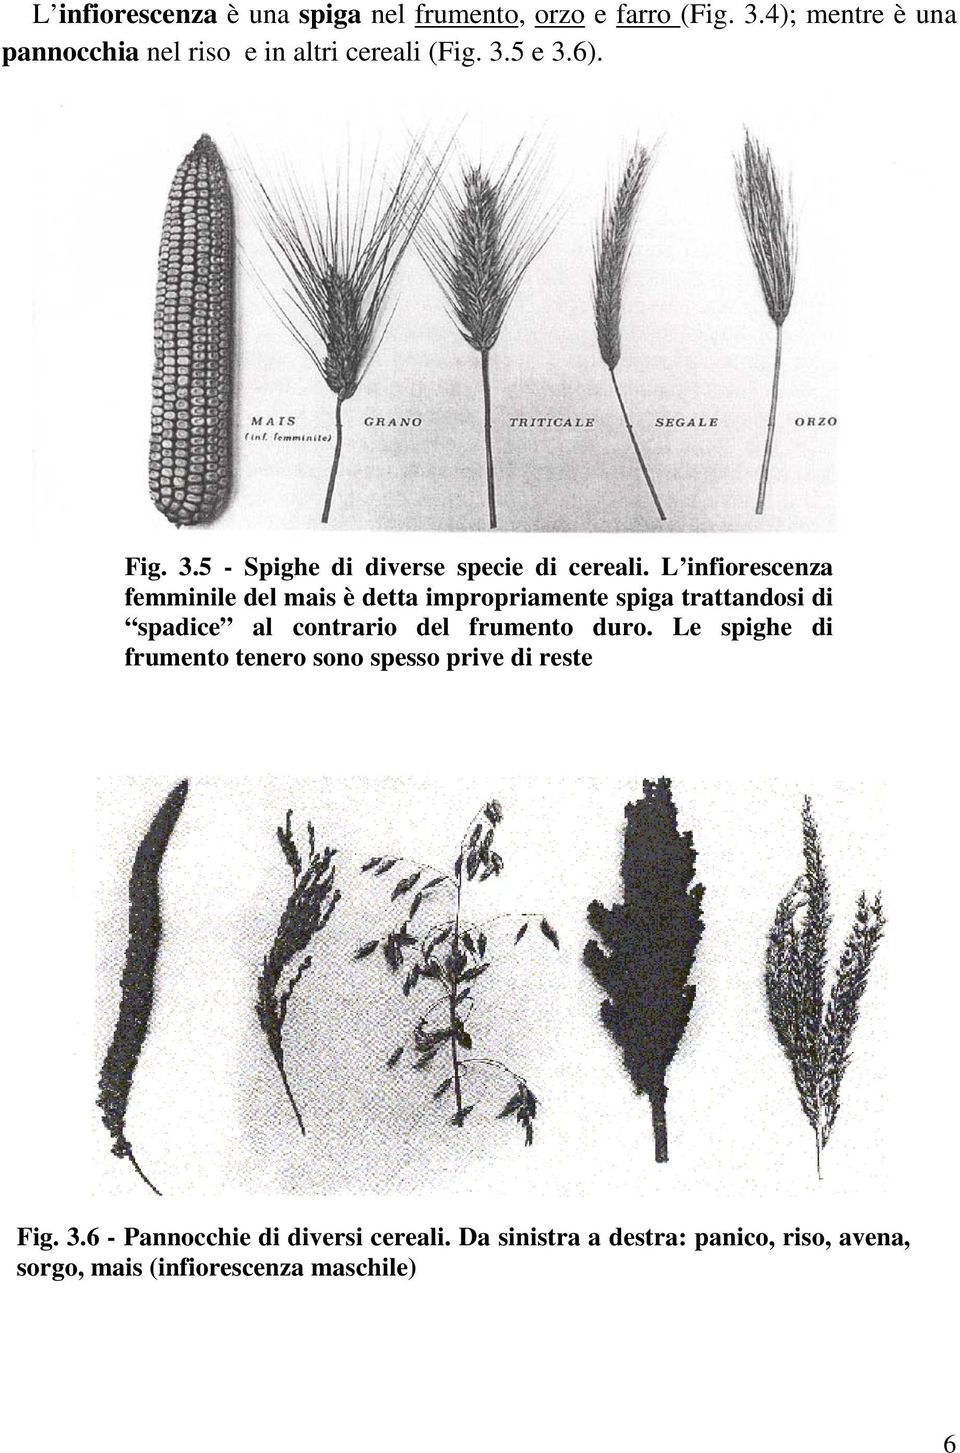 L infiorescenza femminile del mais è detta impropriamente spiga trattandosi di spadice al contrario del frumento duro.